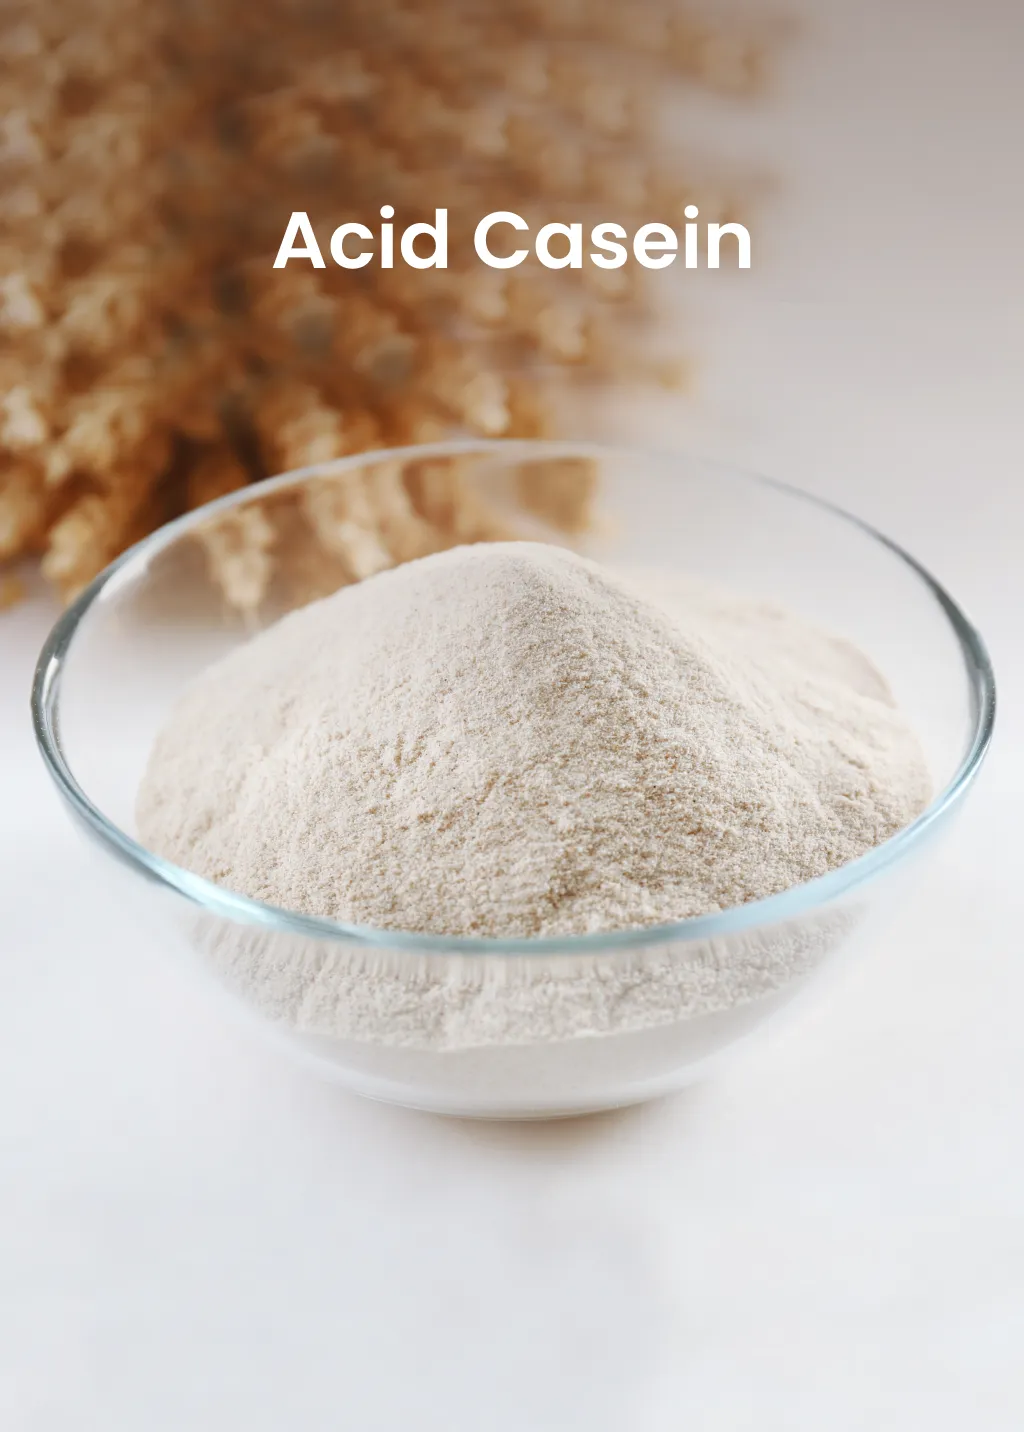 Acid Casein from Milk Powder Asia